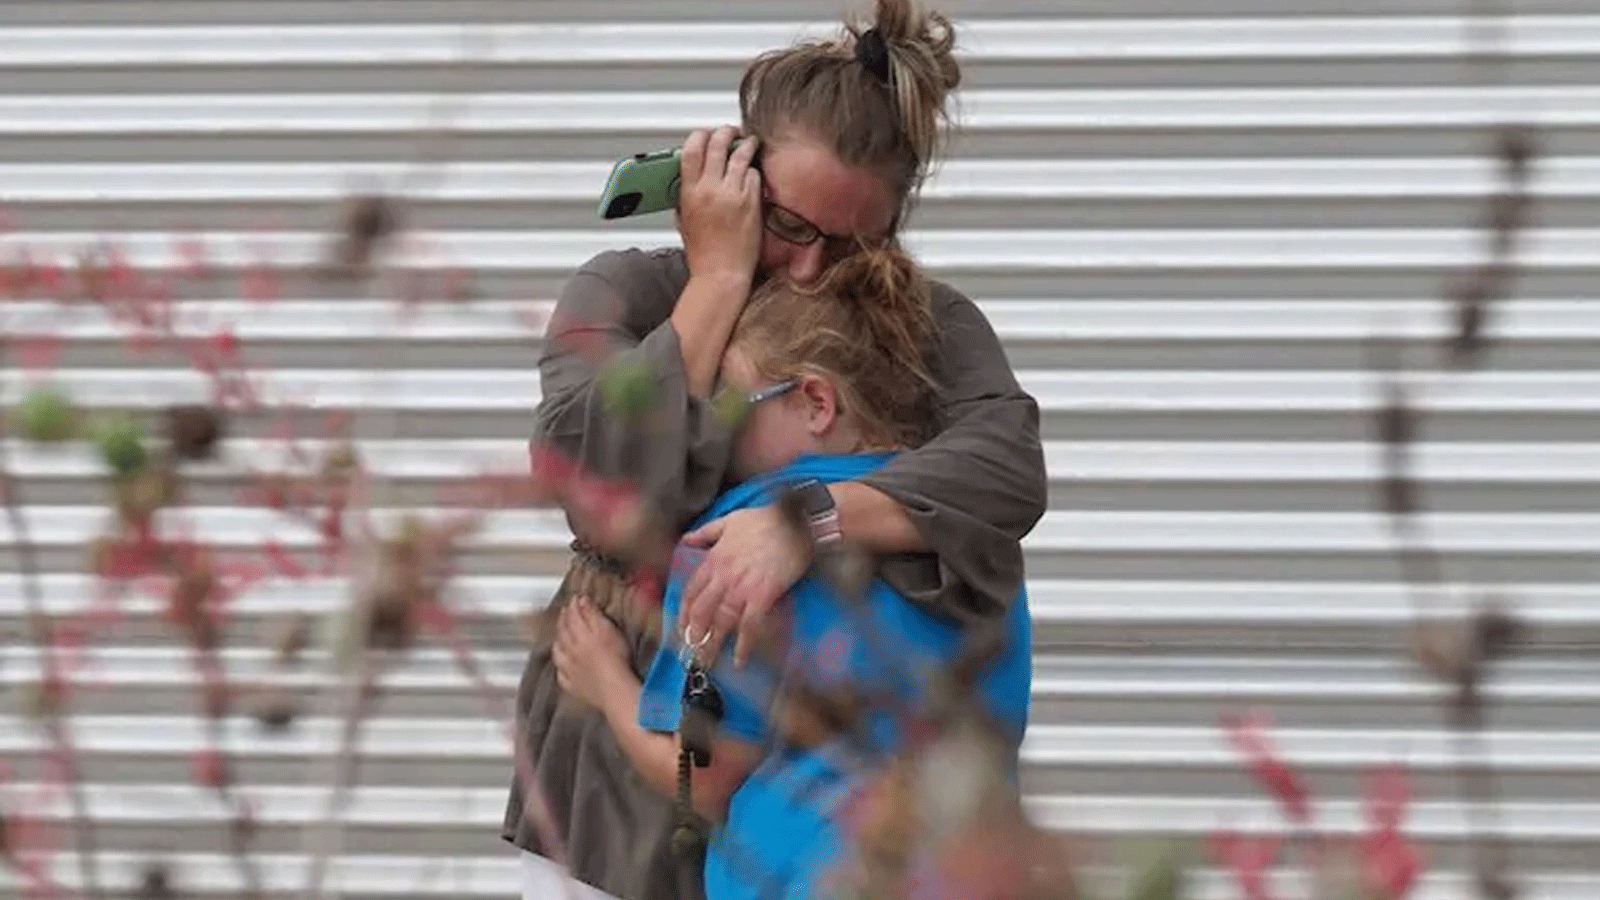 امرأة تبكي وتحتضن فتاة صغيرة خارج مركز ويلي دي ليون سيفيك، حيث سيتم تقديم الدعم النفسي في أعقاب إطلاق النار على المدرسة في أوفالدي، تكساس، يوم الثلاثاء.